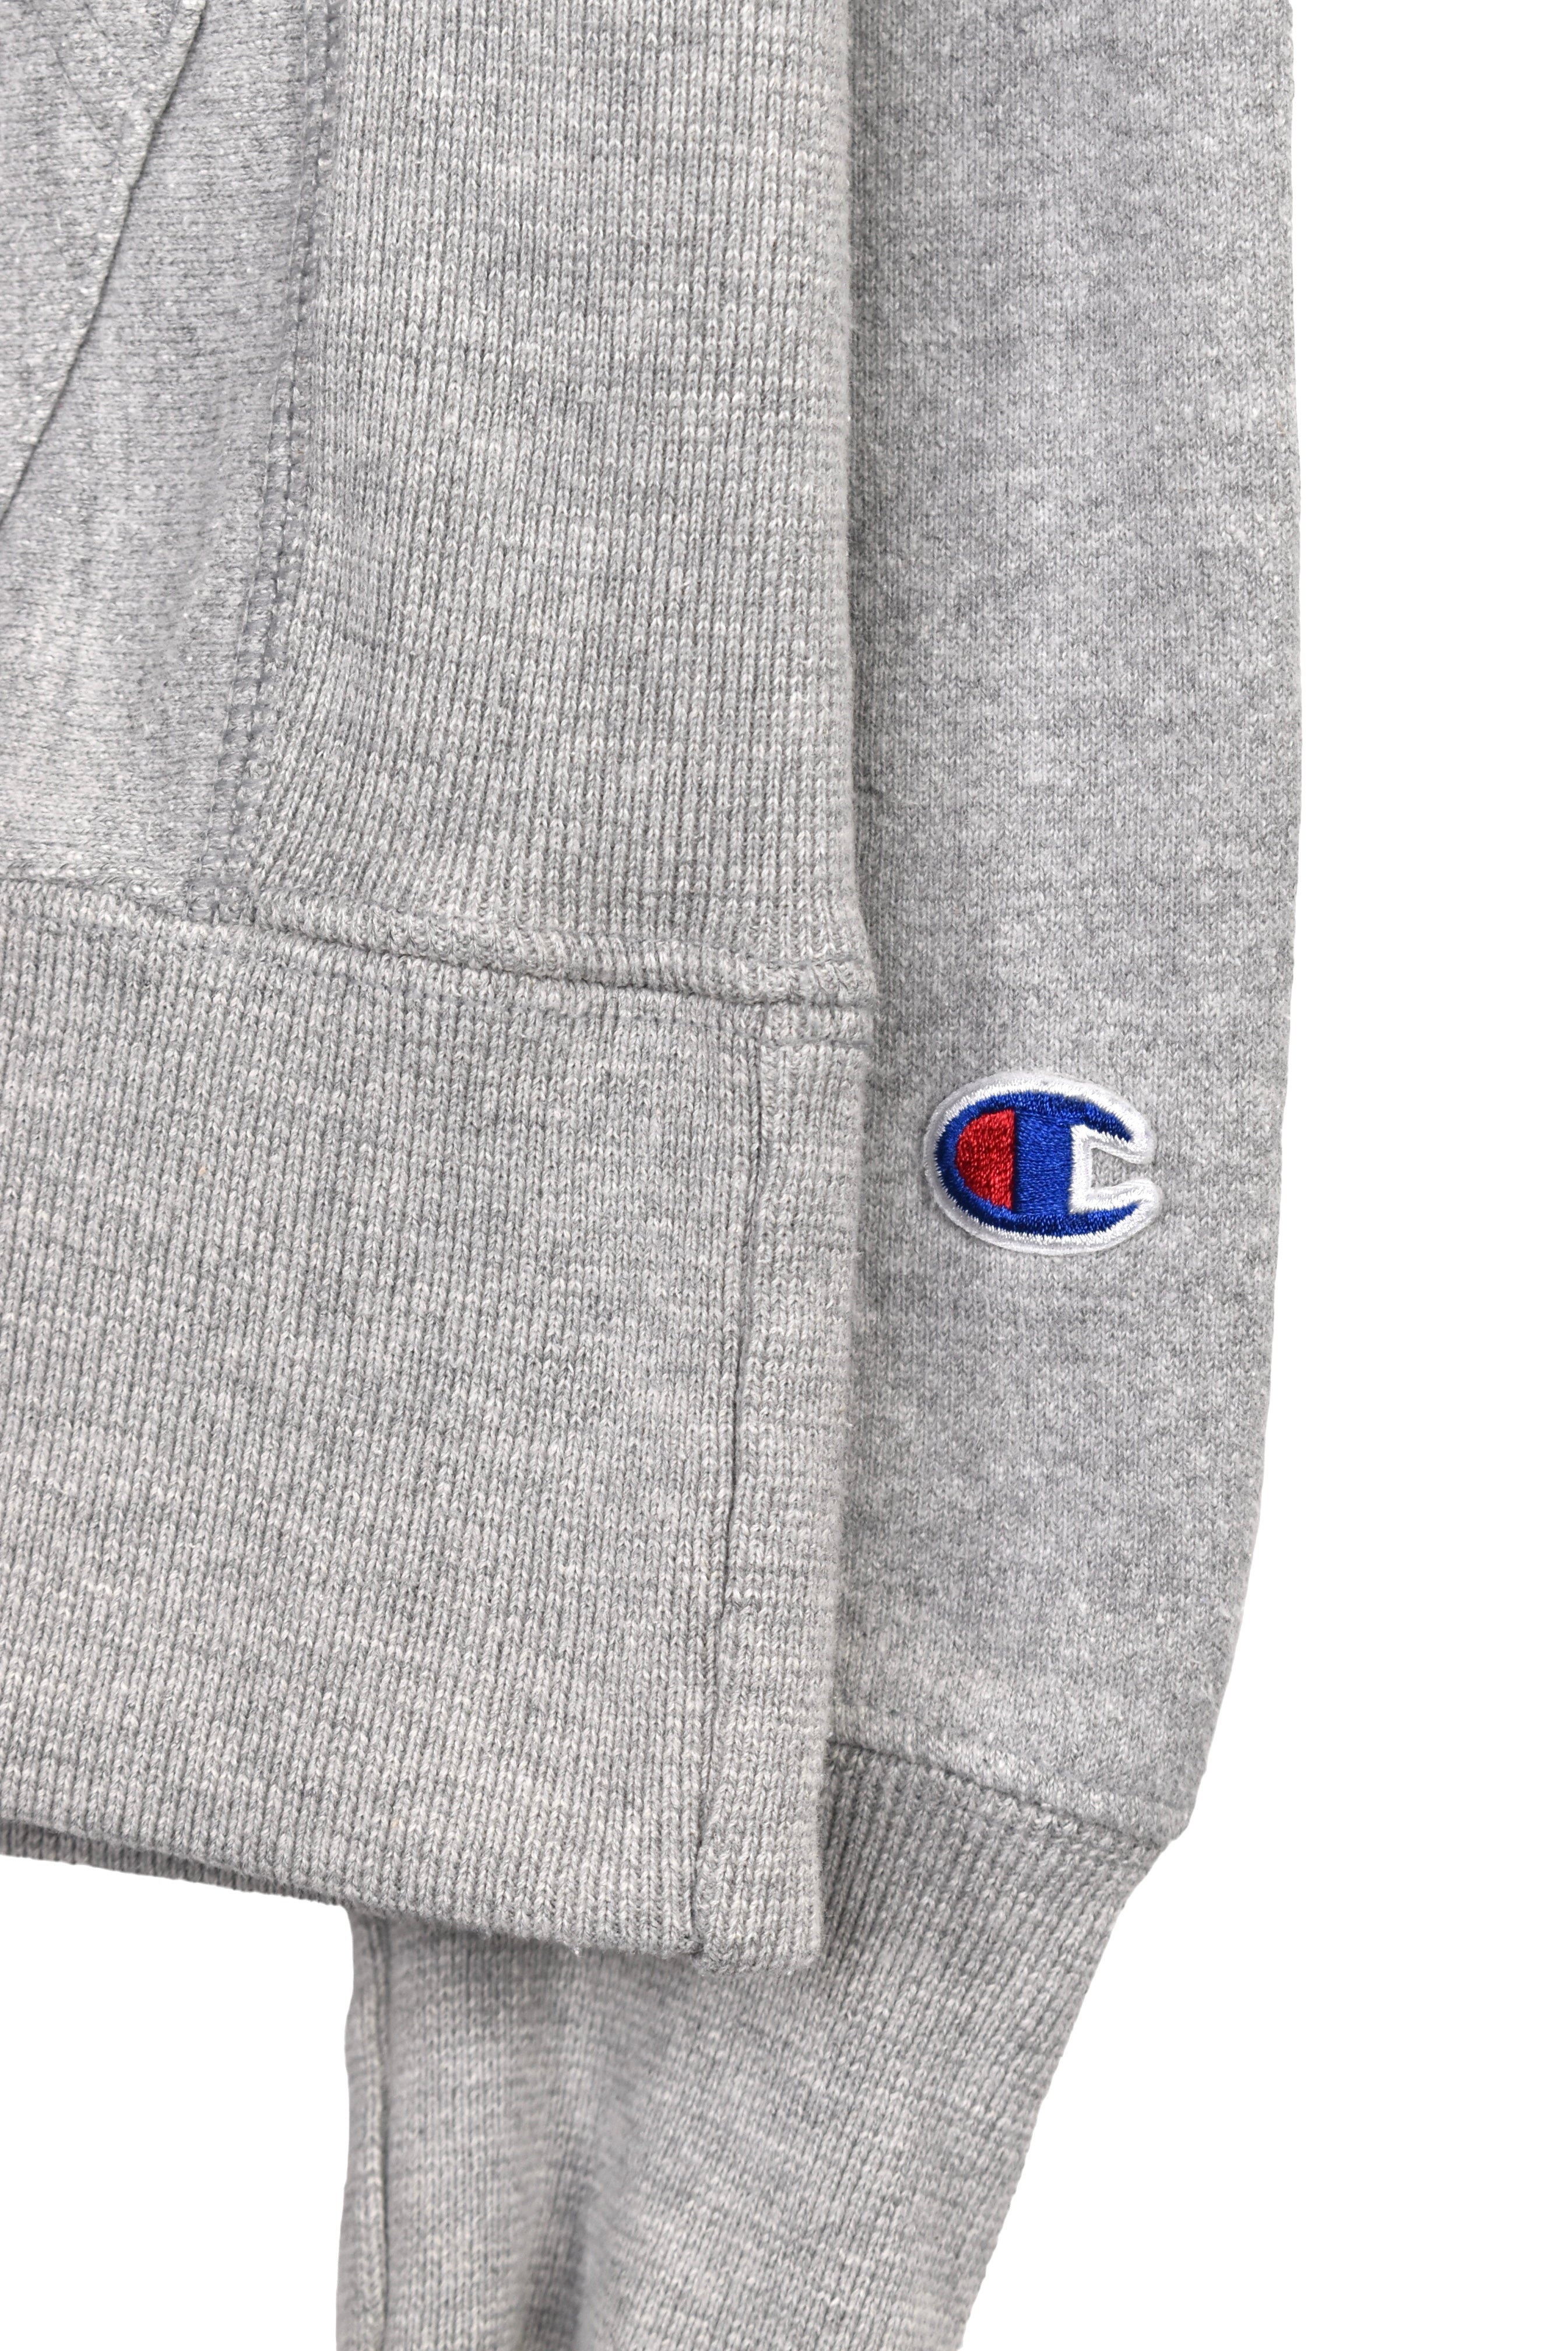 Modern Champion hoodie (S), grey embroidered sweatshirt